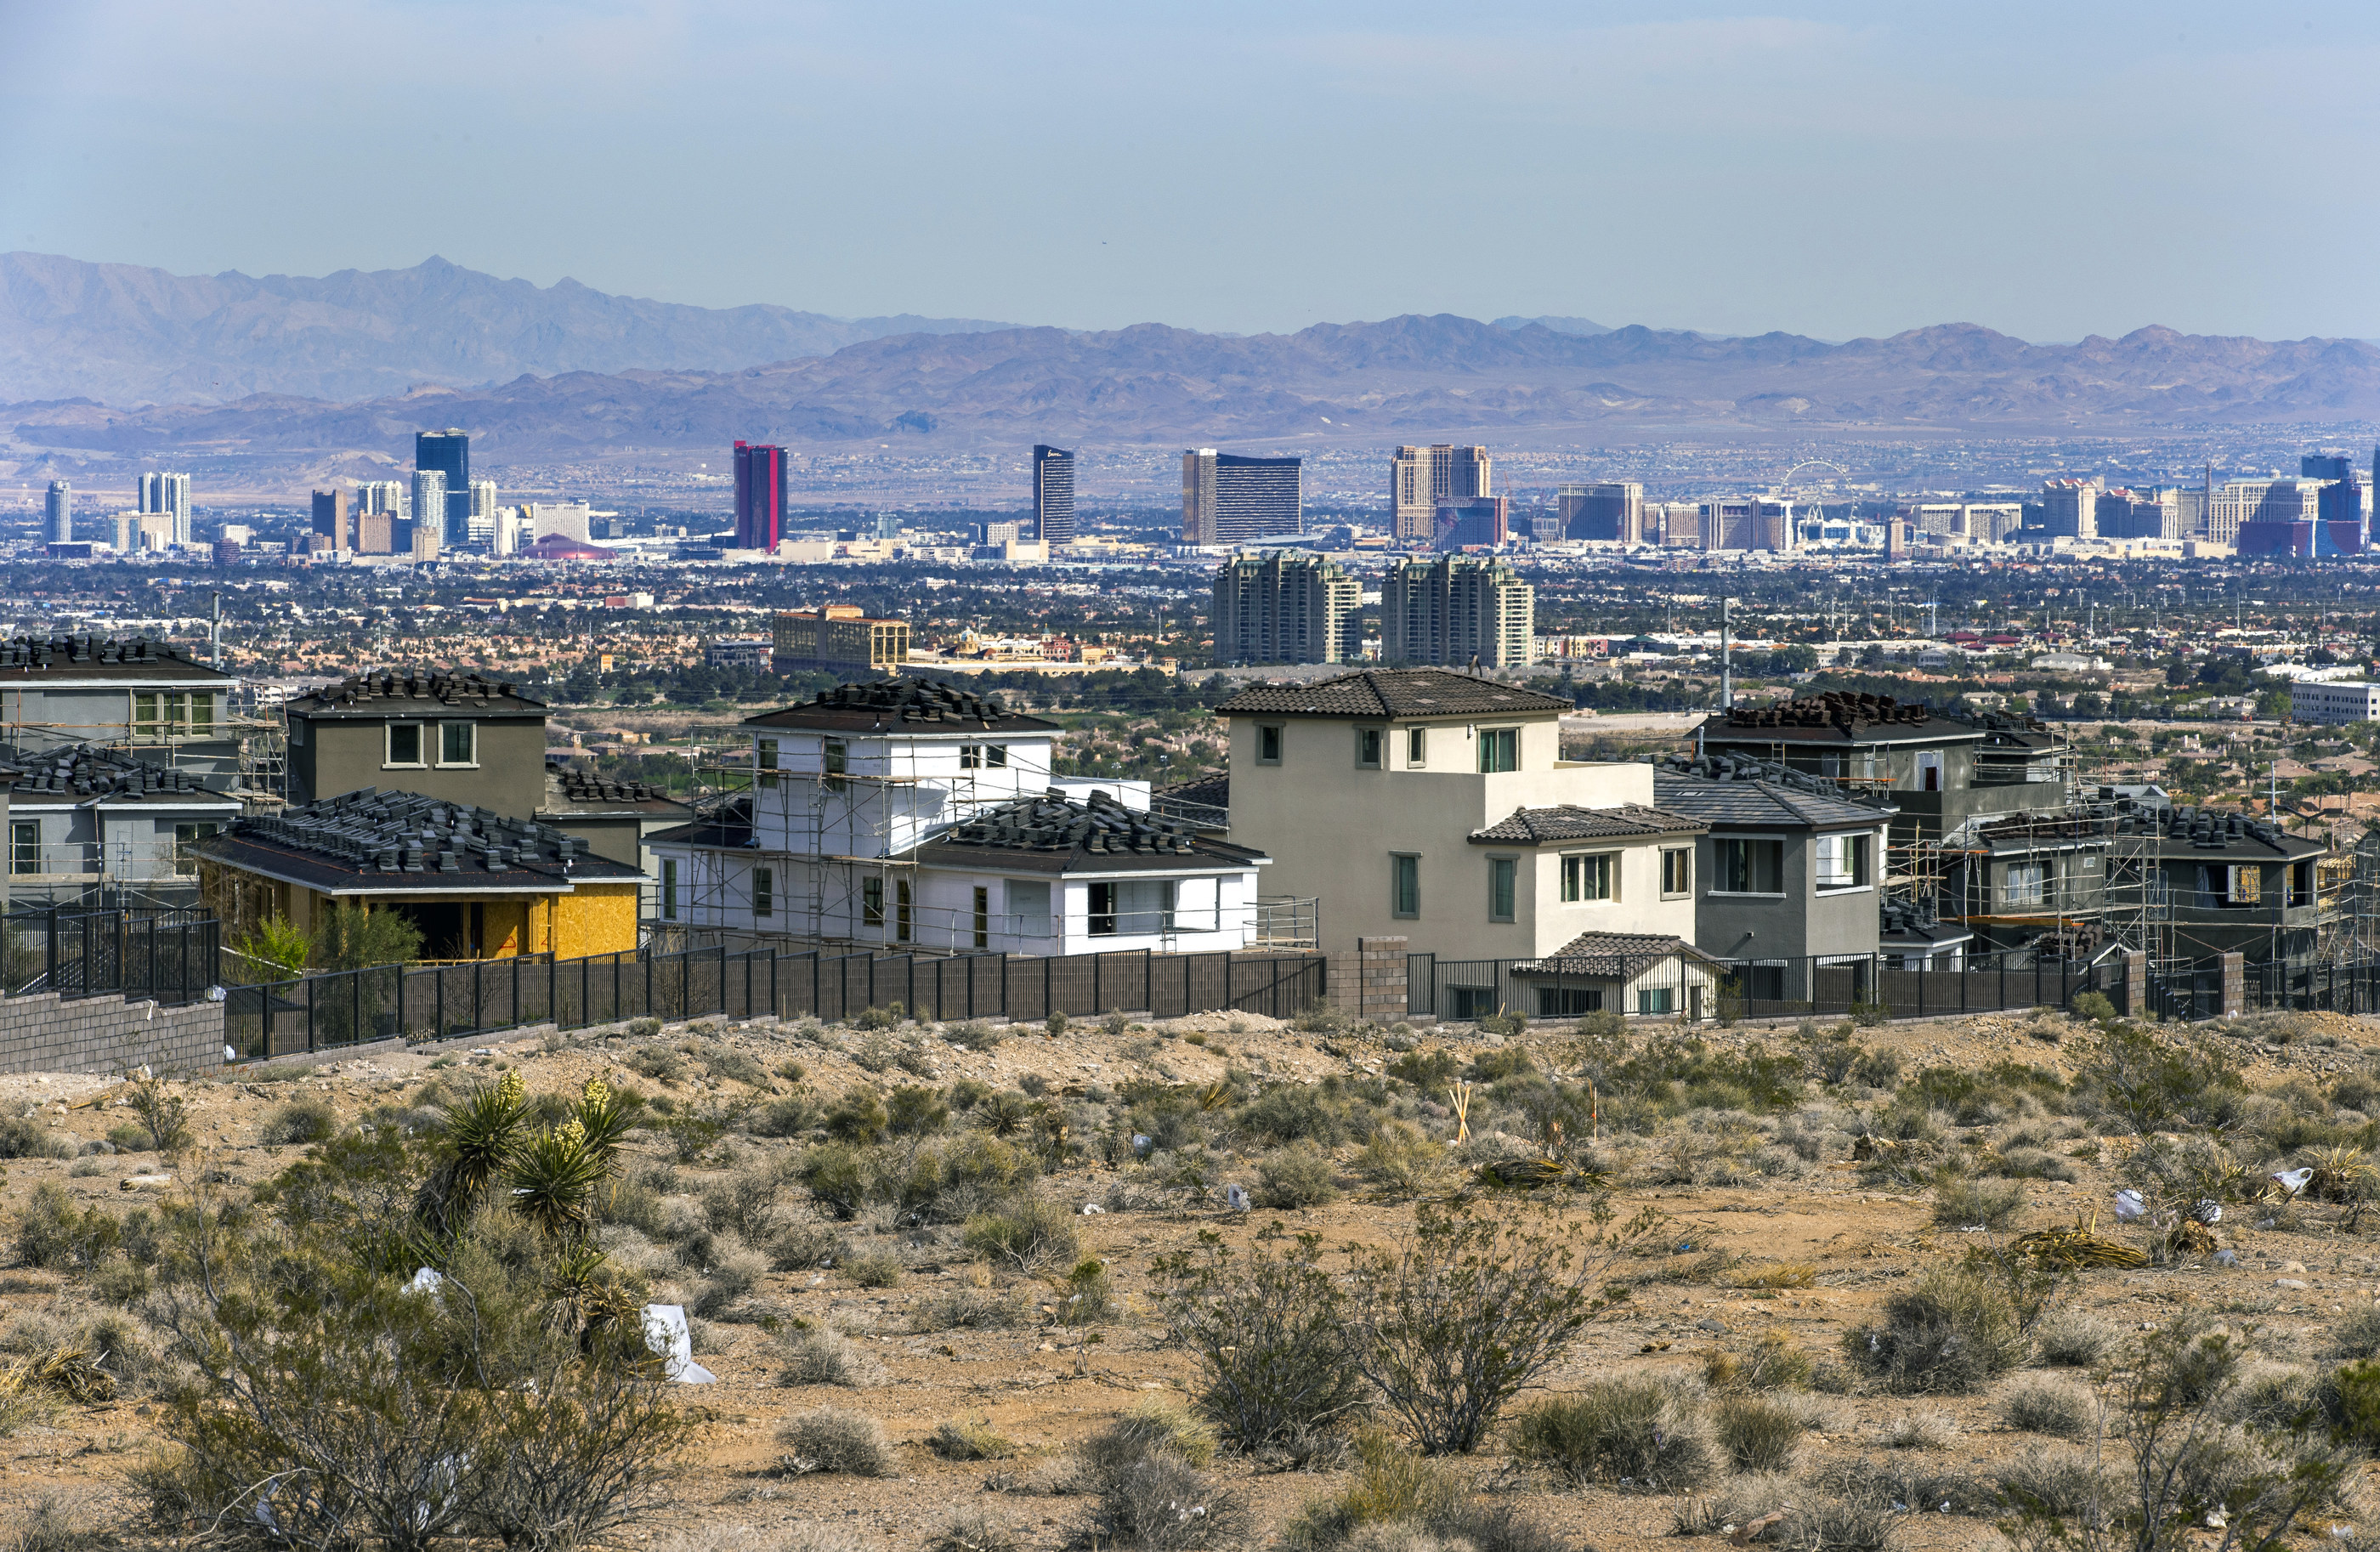 Tingkat hipotek mencapai level tertinggi dalam dua dekade, mendinginkan penjualan rumah di Las Vegas, AS